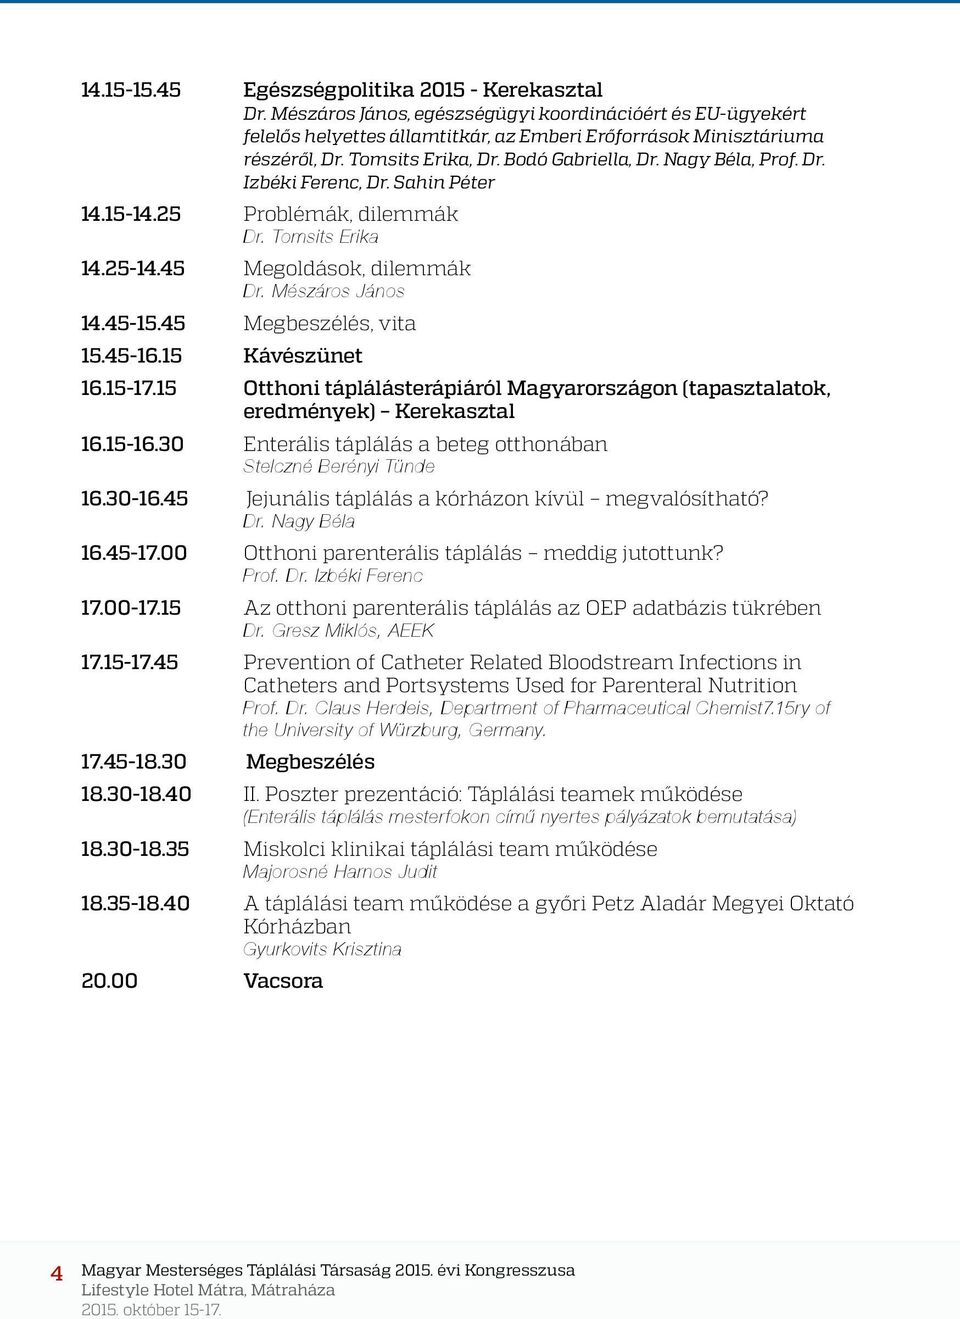 45-15.45 Megbeszélés, vita 15.45-16.15 Kávészünet 16.15-17.15 Otthoni táplálásterápiáról Magyarországon (tapasztalatok, eredmények) Kerekasztal 16.15-16.